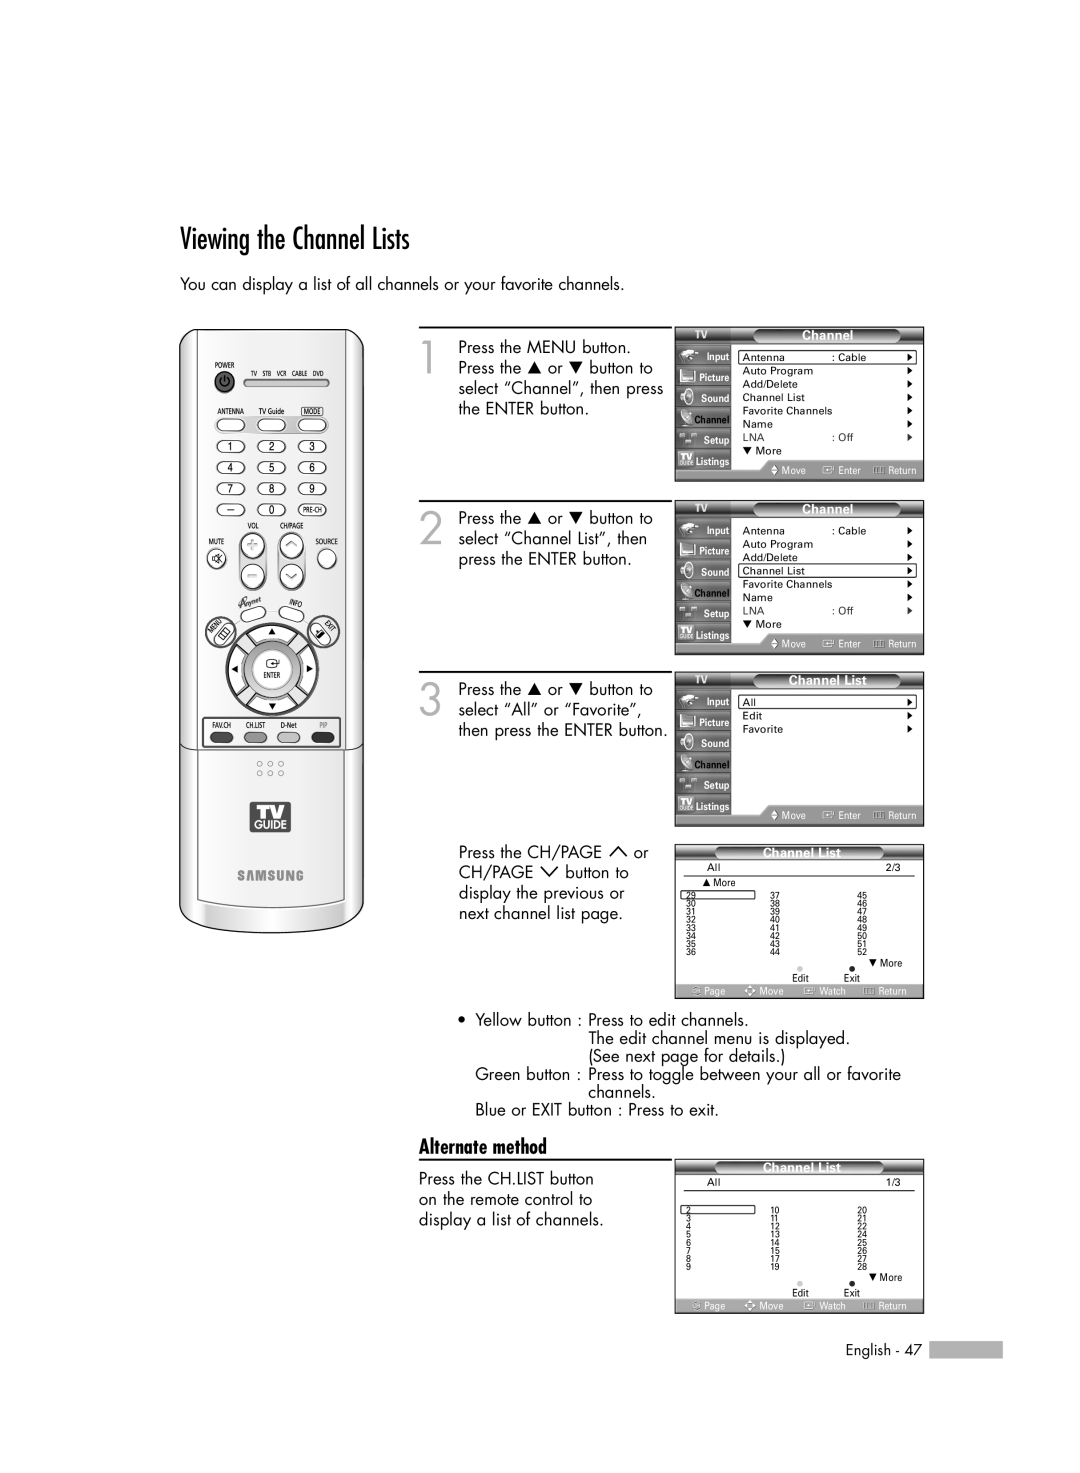 Samsung HL-R7178W, HL-R6178W, HL-R5678W manual Viewing the Channel Lists, Alternate method 